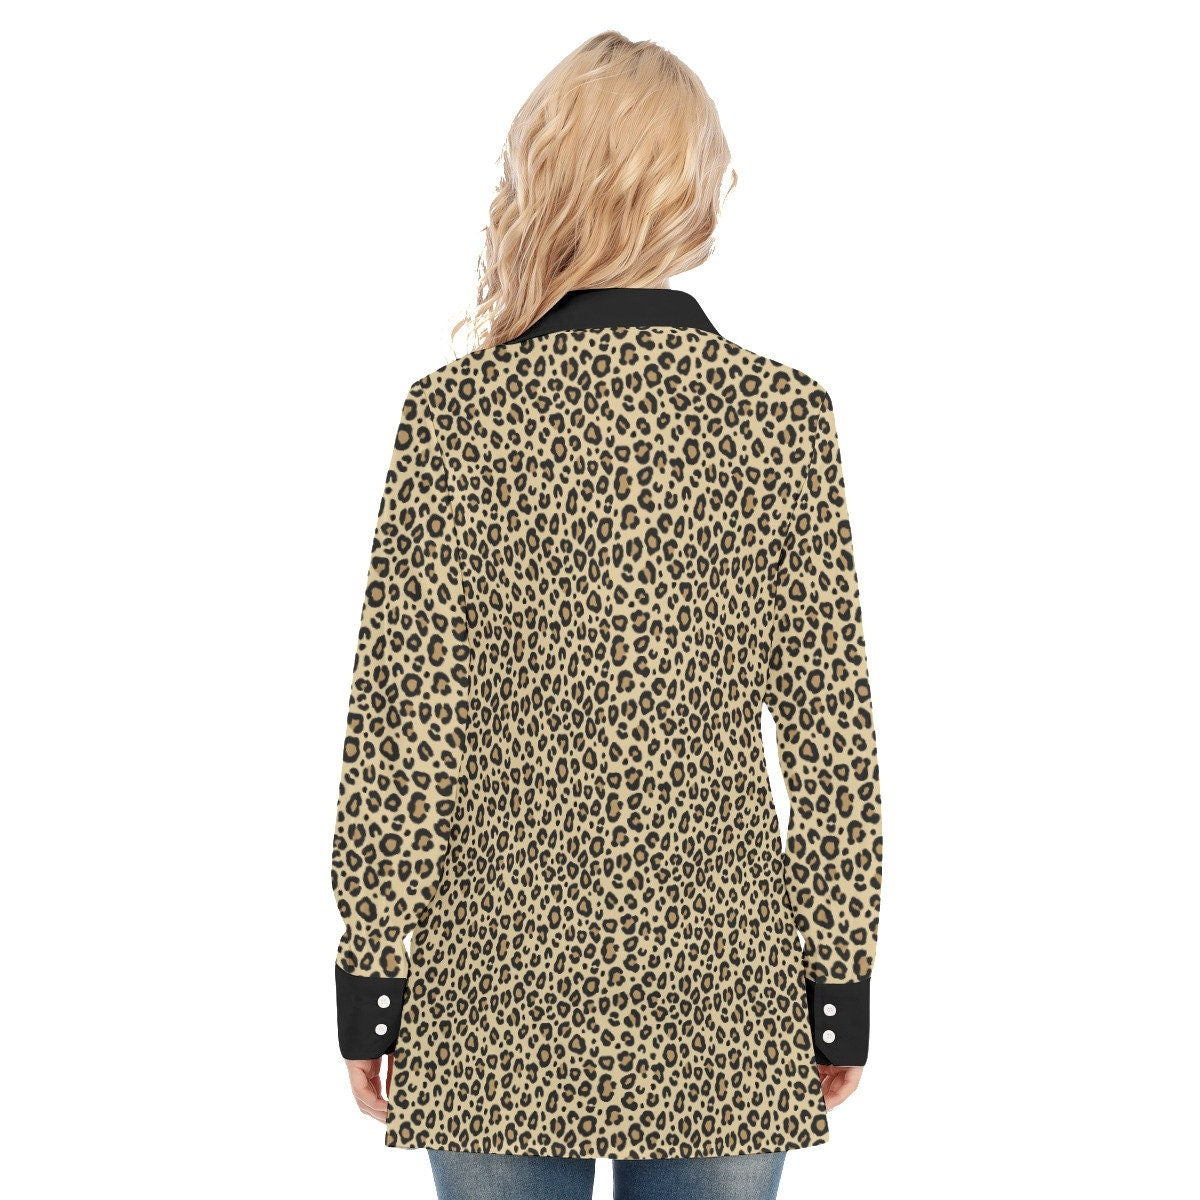 Leoparden-Shirt, handgemachtes Leoparden-Print-Shirt, Sexy Shirt, Animal-Print-Shirt, Damenbluse, Damen-Top, Langarmshirt Damen, High Fashion